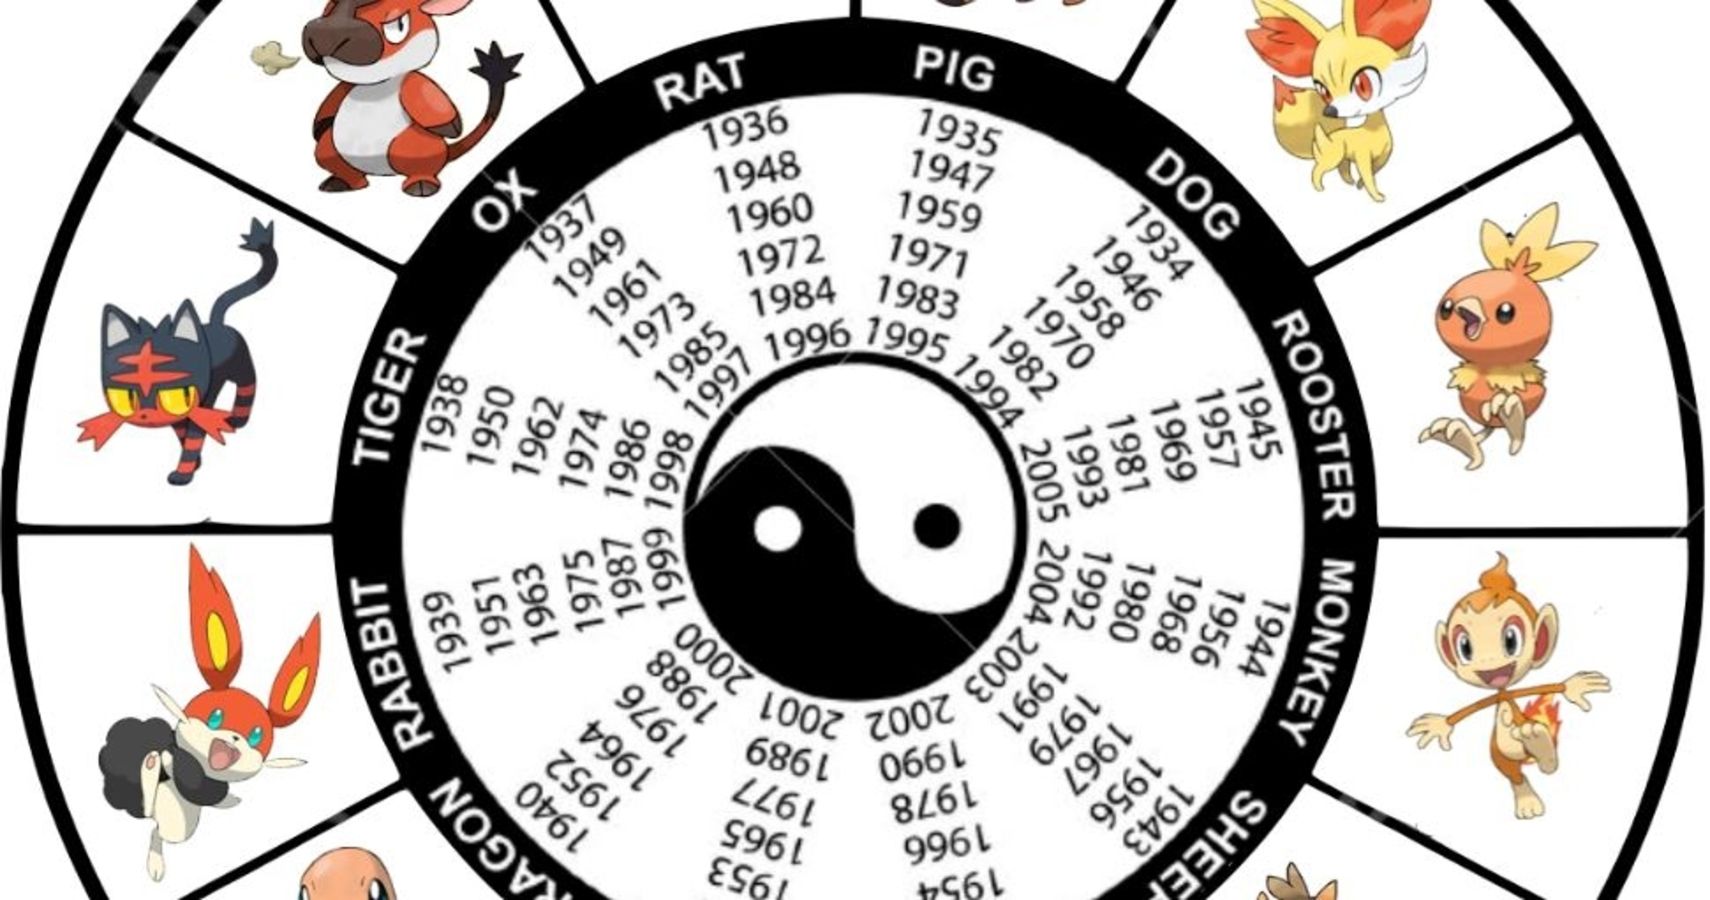 chinese zodiac pokemon